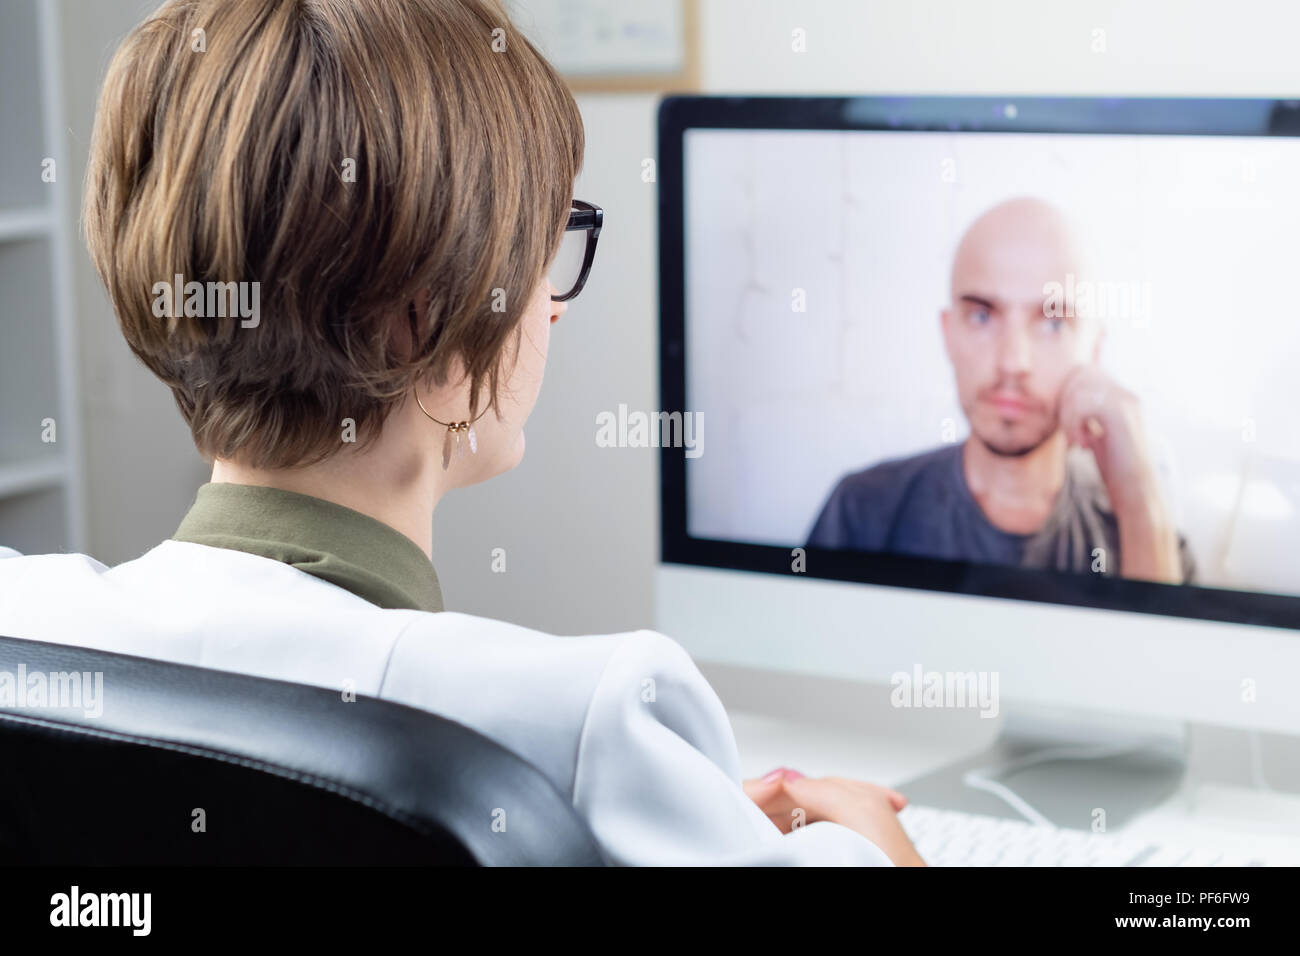 Le concept de la santé numérique : médecin ayant des réunions en ligne avec un patient. Médecin consultant une personne au moyen de systèmes de conférence web Banque D'Images